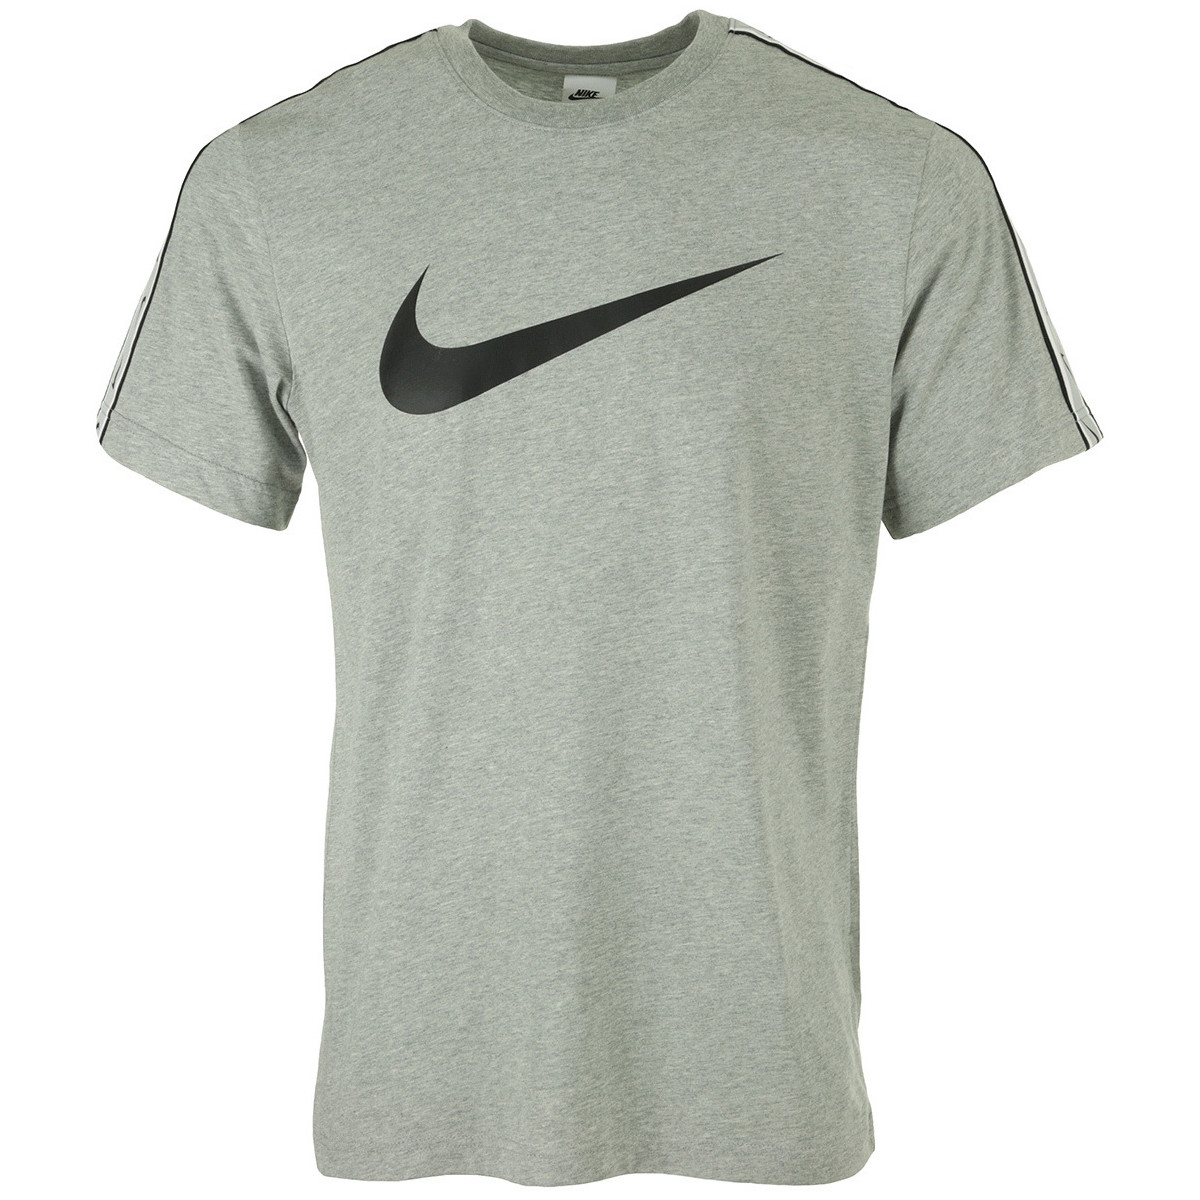 Nike Repeat Swoosh Tee shirt 24521108 1200 A